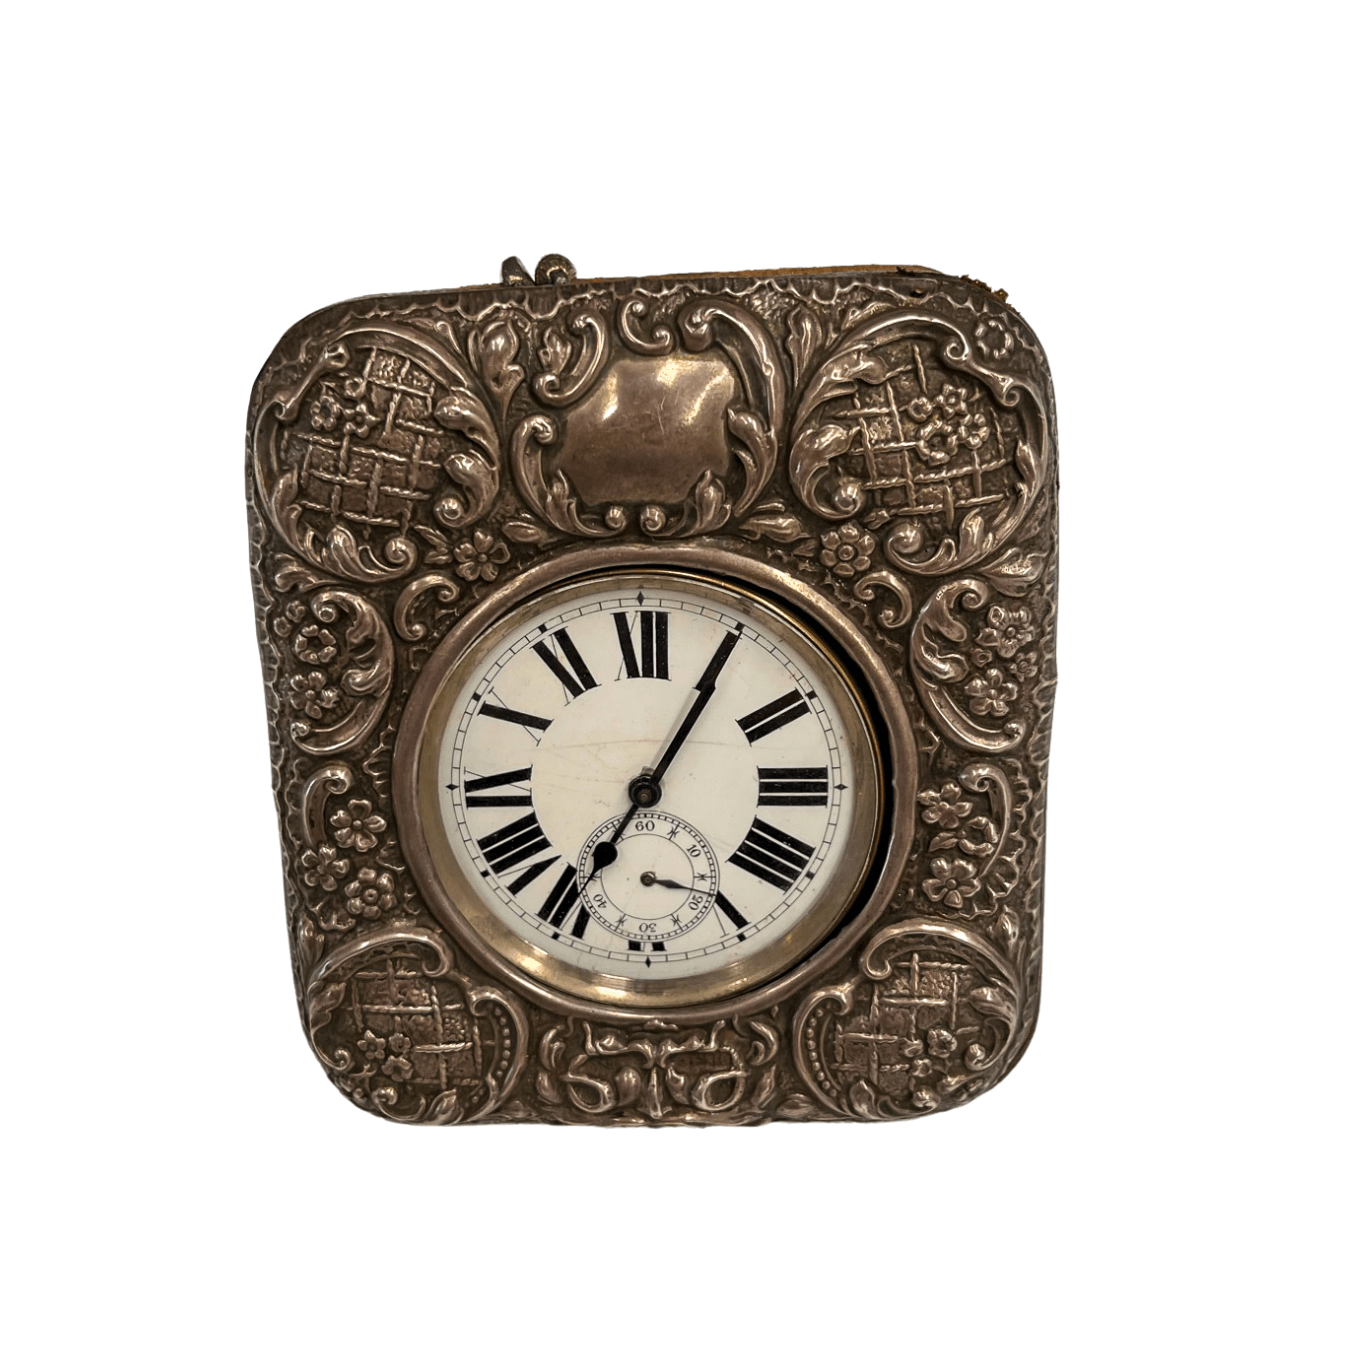 Relógio Antigo Argentan de 1891